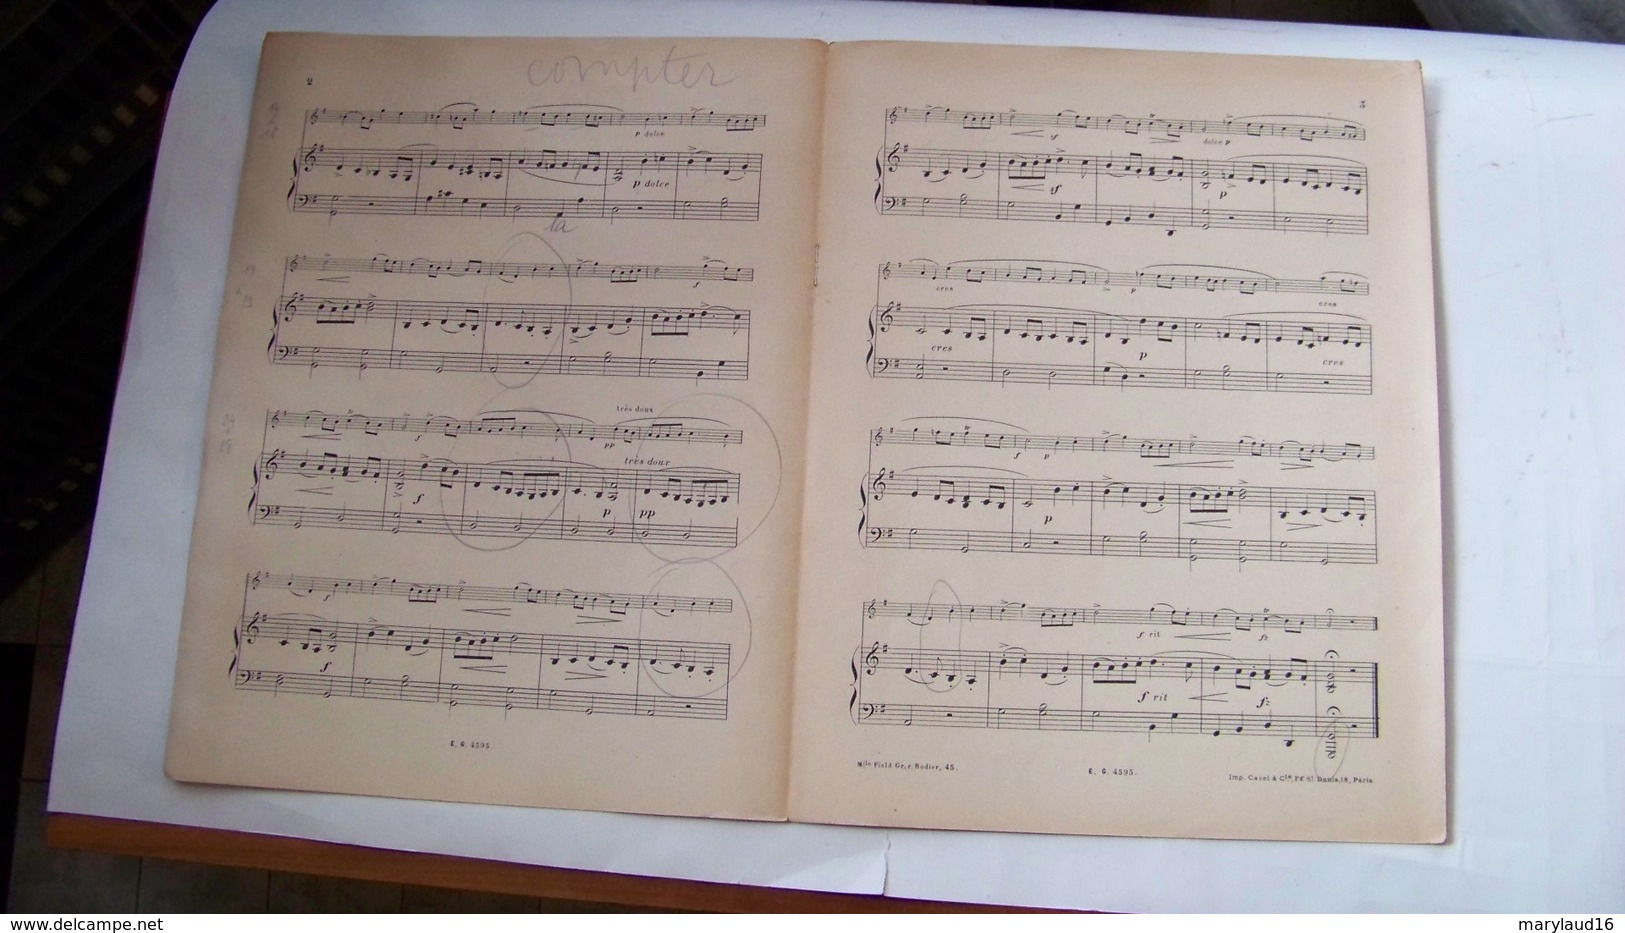 Martini - Les Moutons (célèbre Gavotte) Pour Violon Et Piano - Transcription Bartholomeus - Edition Gallet - Musique Folklorique